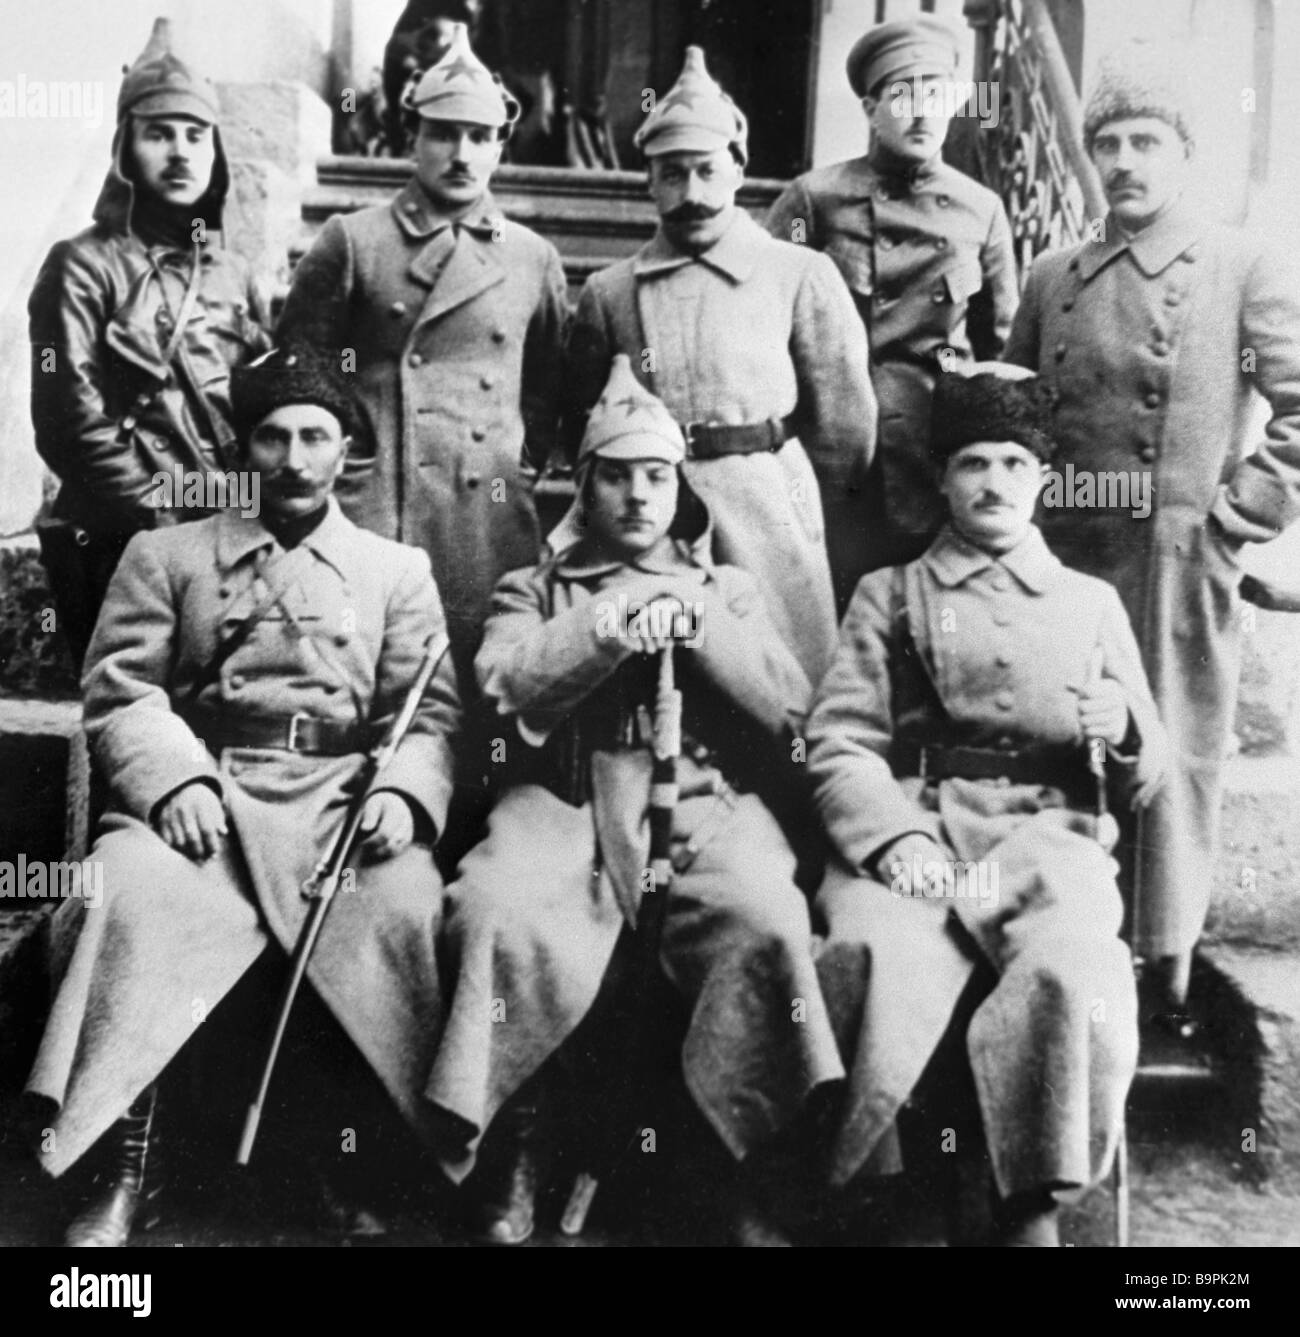 Gruppe von Kommandanten von ersten Kavallerie Armee sitzen Semyon Budyonny  links zuerst Kliment Voroshilov, zweite Straße links und Yefim  Stockfotografie - Alamy